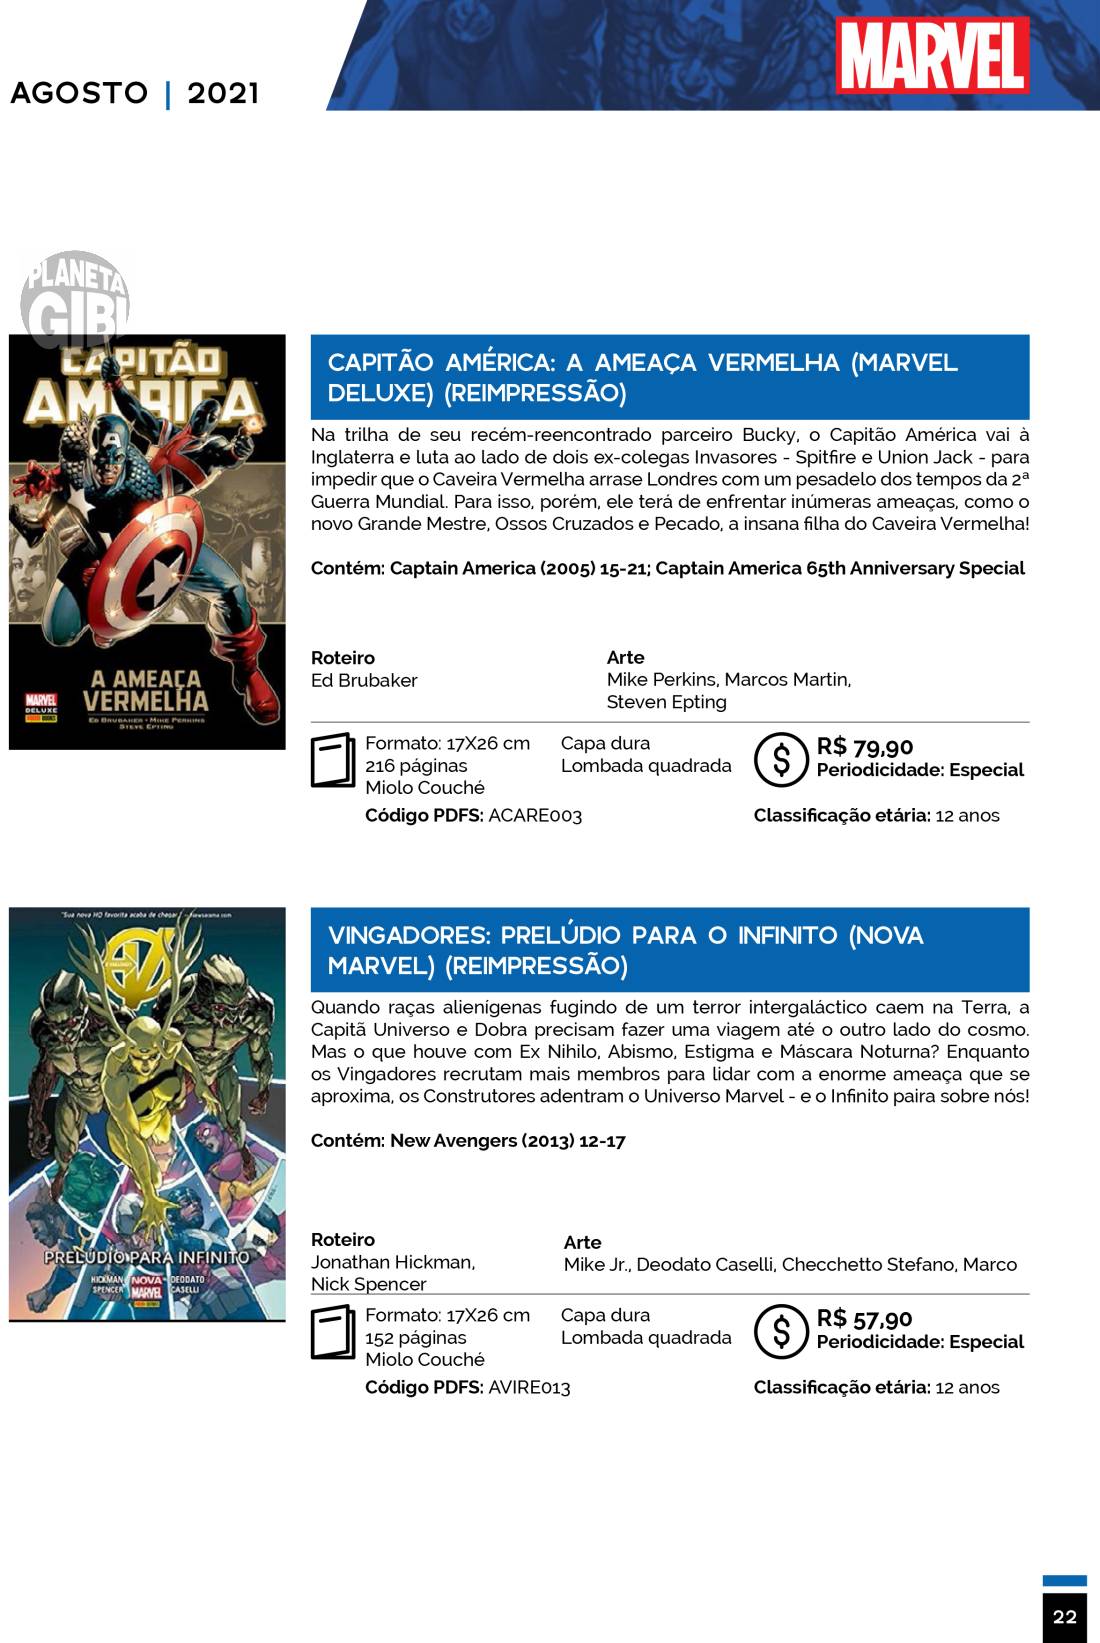 1 - Checklist Marvel/Panini (Julho/2020 - pág.09) - Página 9 Catalogo-Julho-Agosto-22